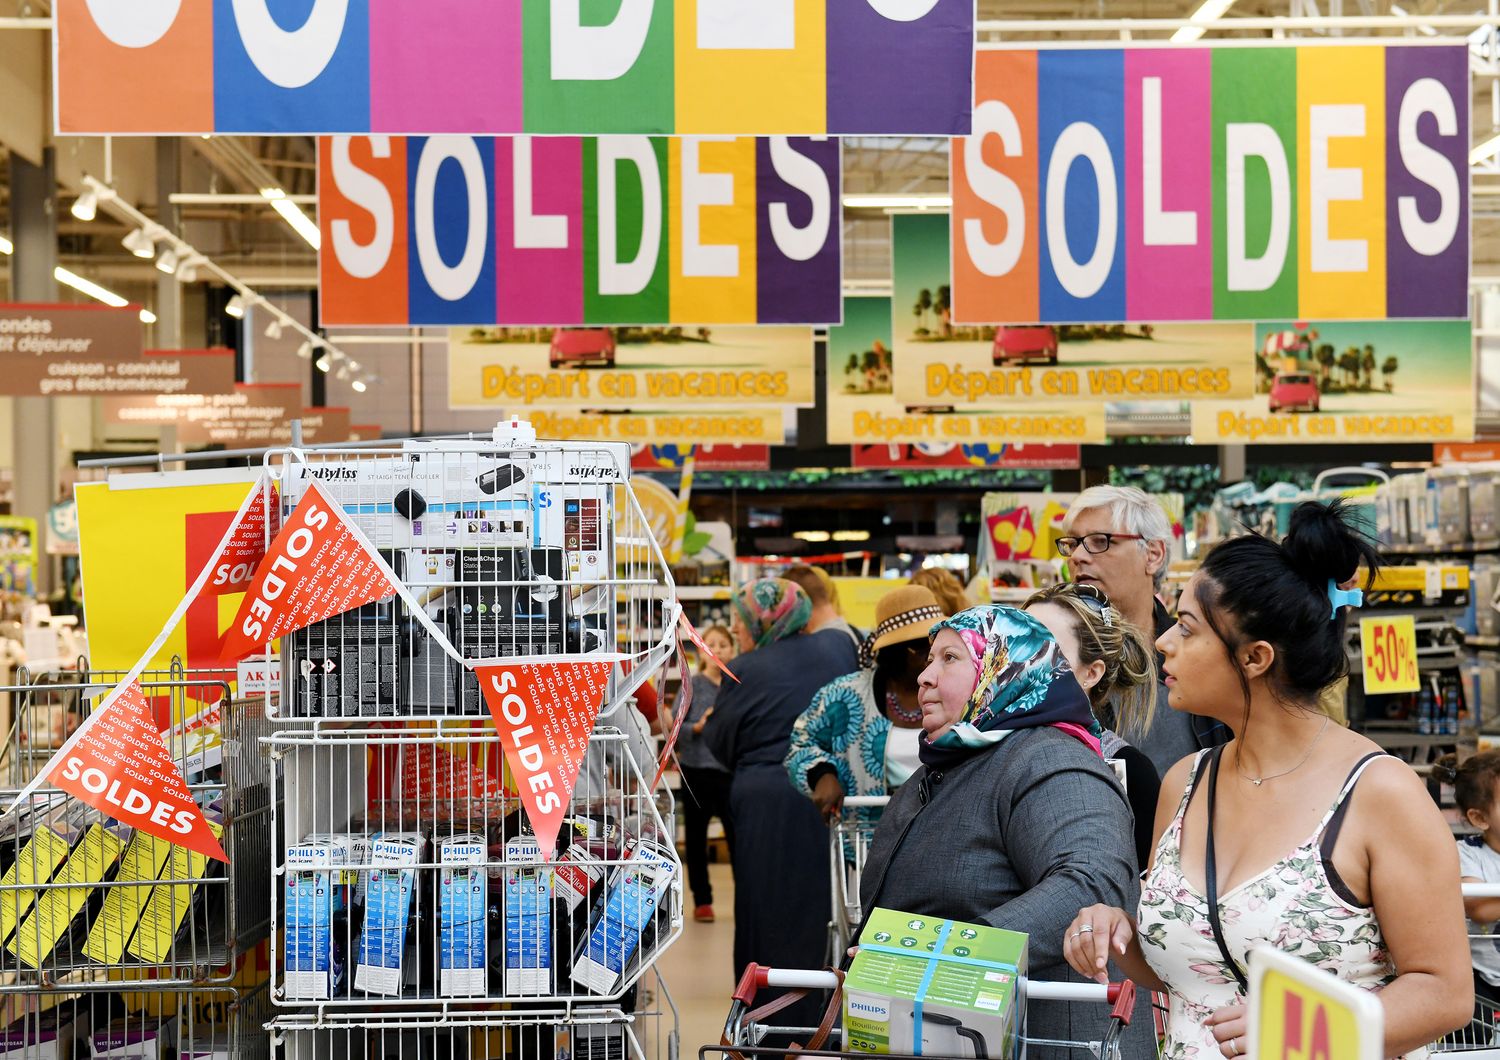 Nella guerra dei supermercati sta per irrompere&nbsp;Amazon